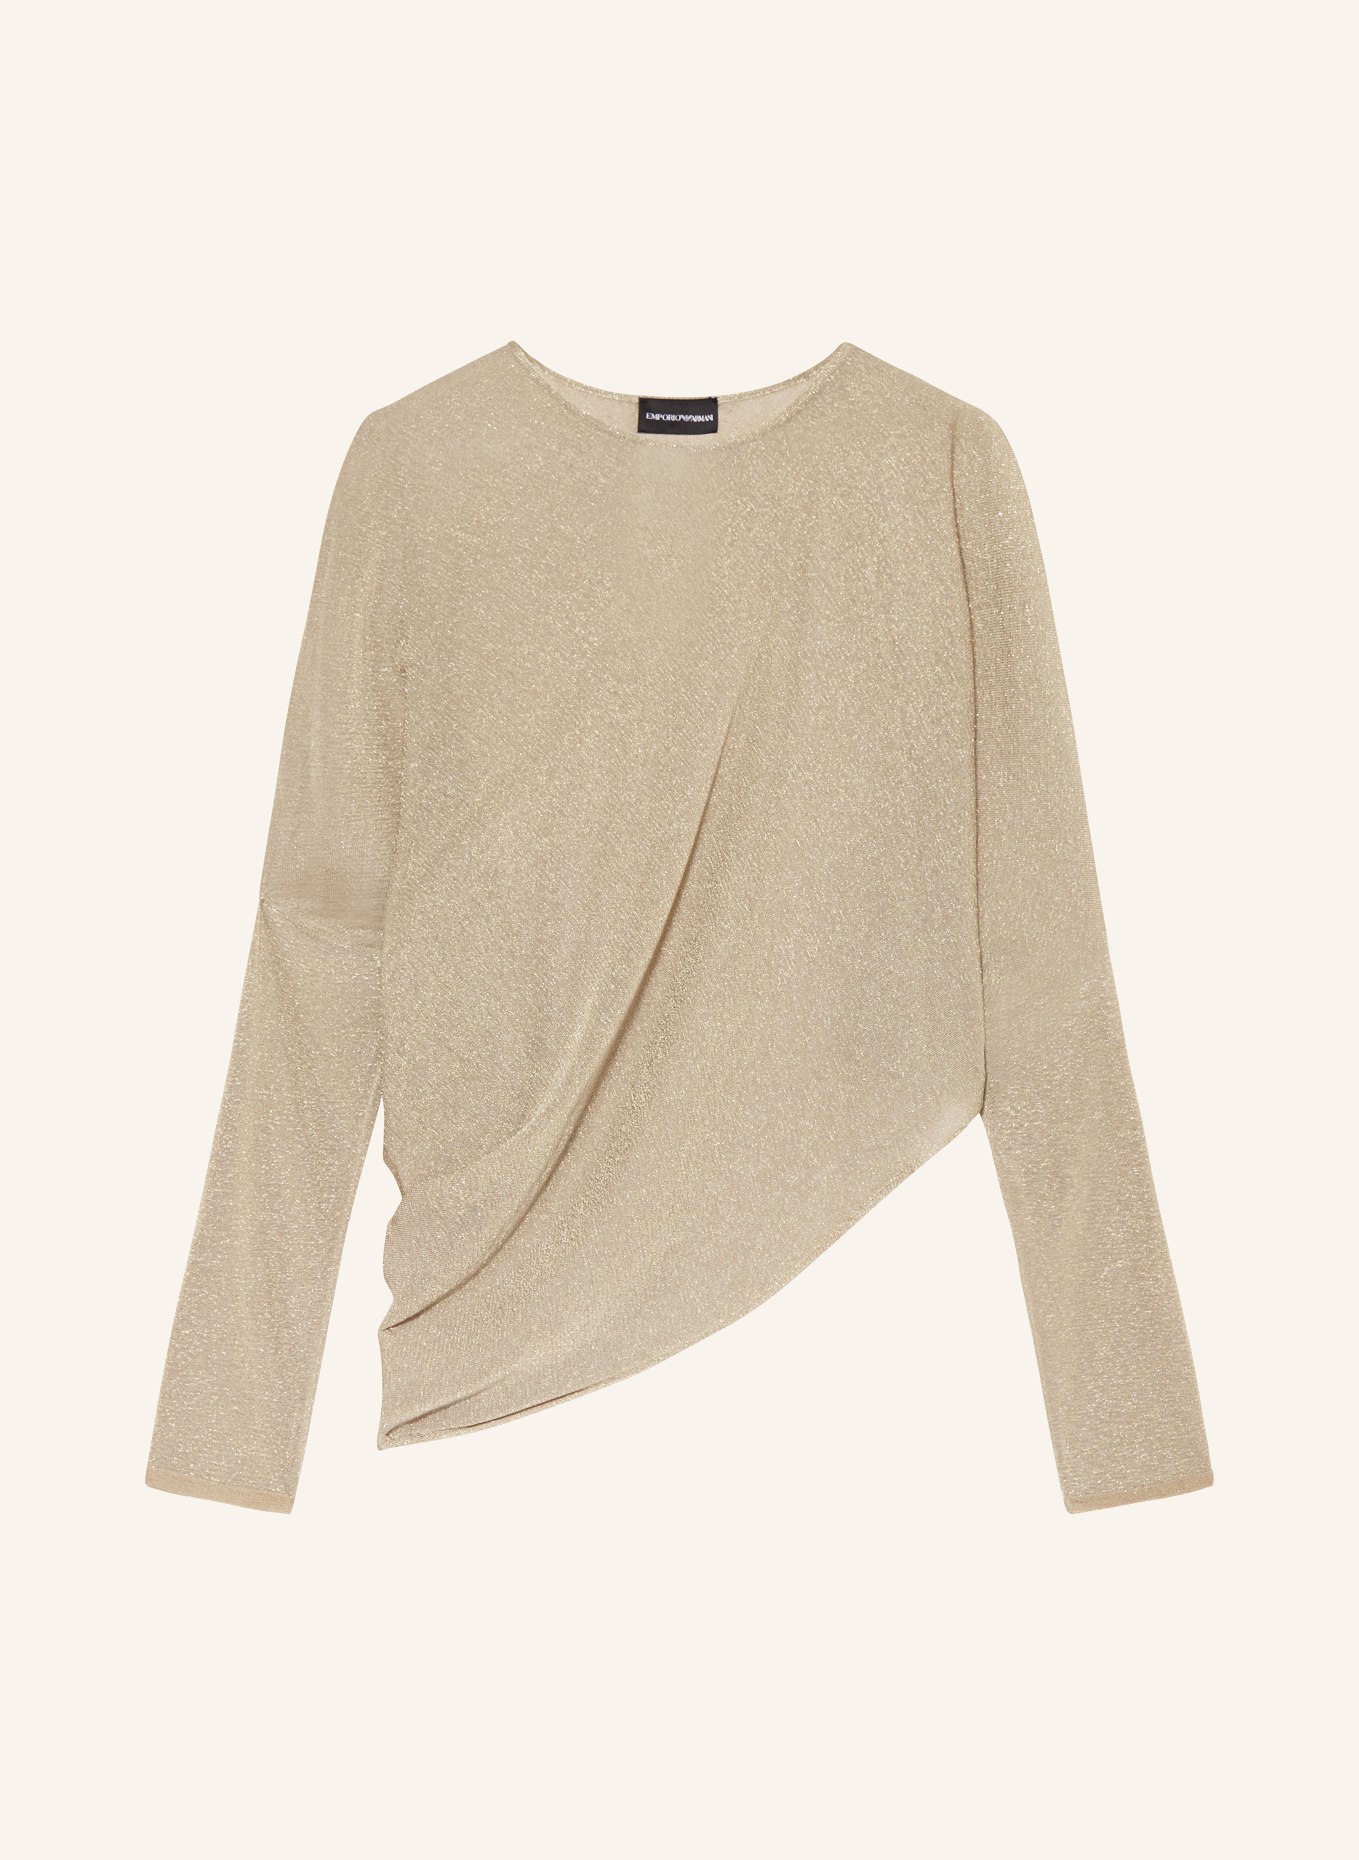 EMPORIO ARMANI Sweater with glitter thread, Color: GOLD (Image 1)